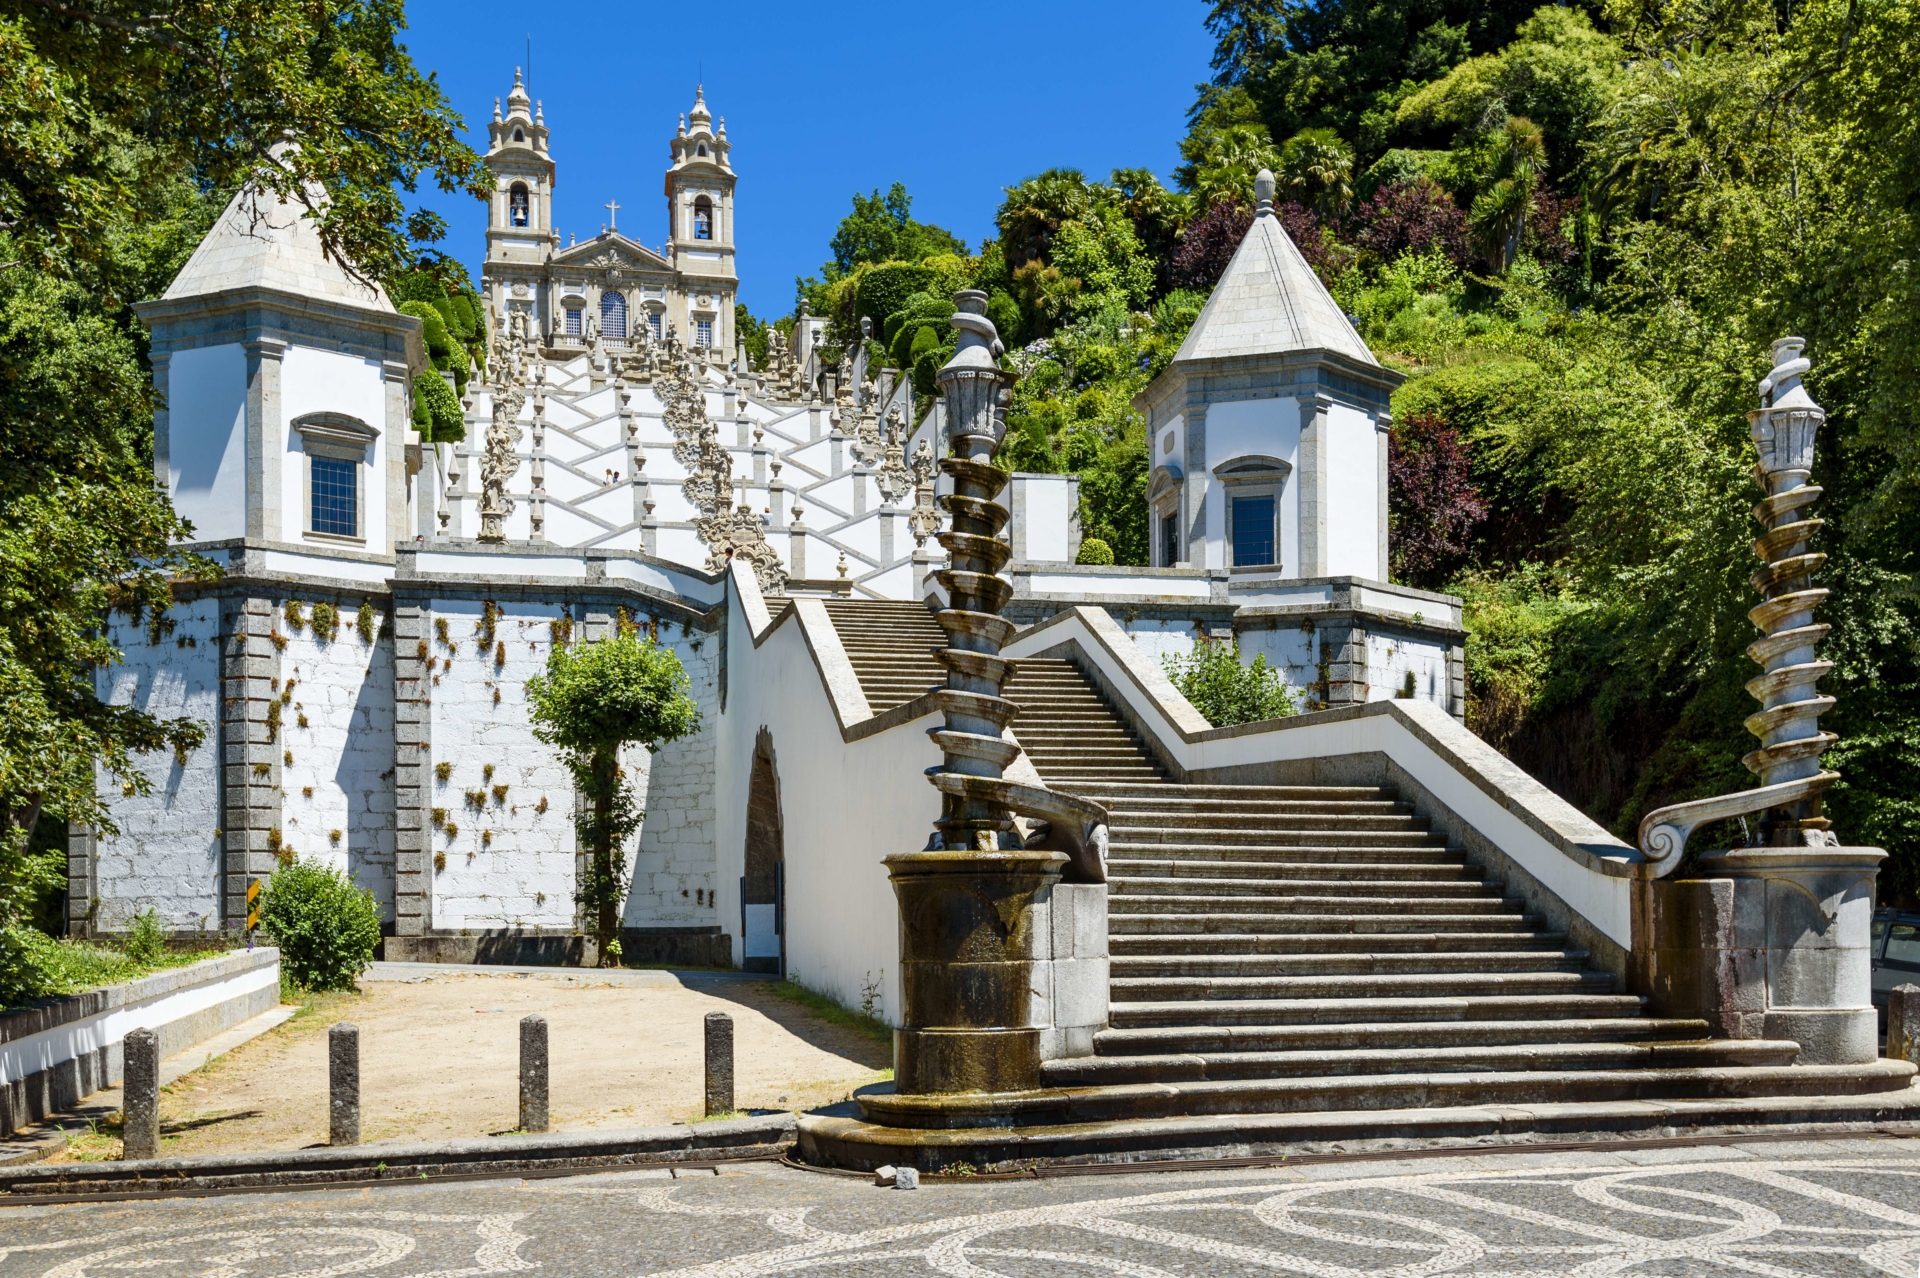 Braga - Portugal